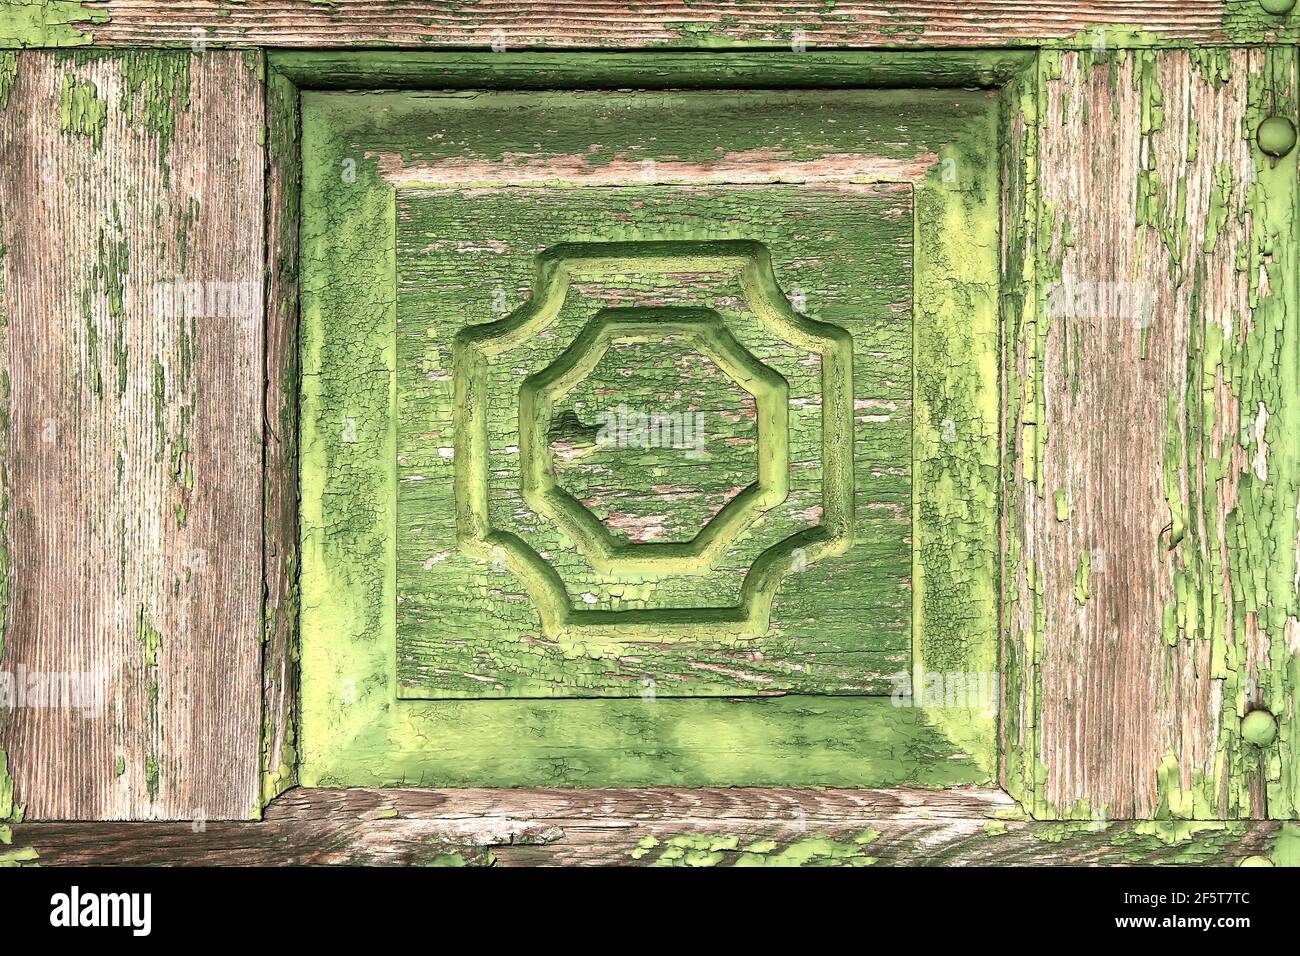 Panneau en bois ancien d'apparence sorbrée peint en vert. New York. ÉTATS-UNIS. Banque D'Images